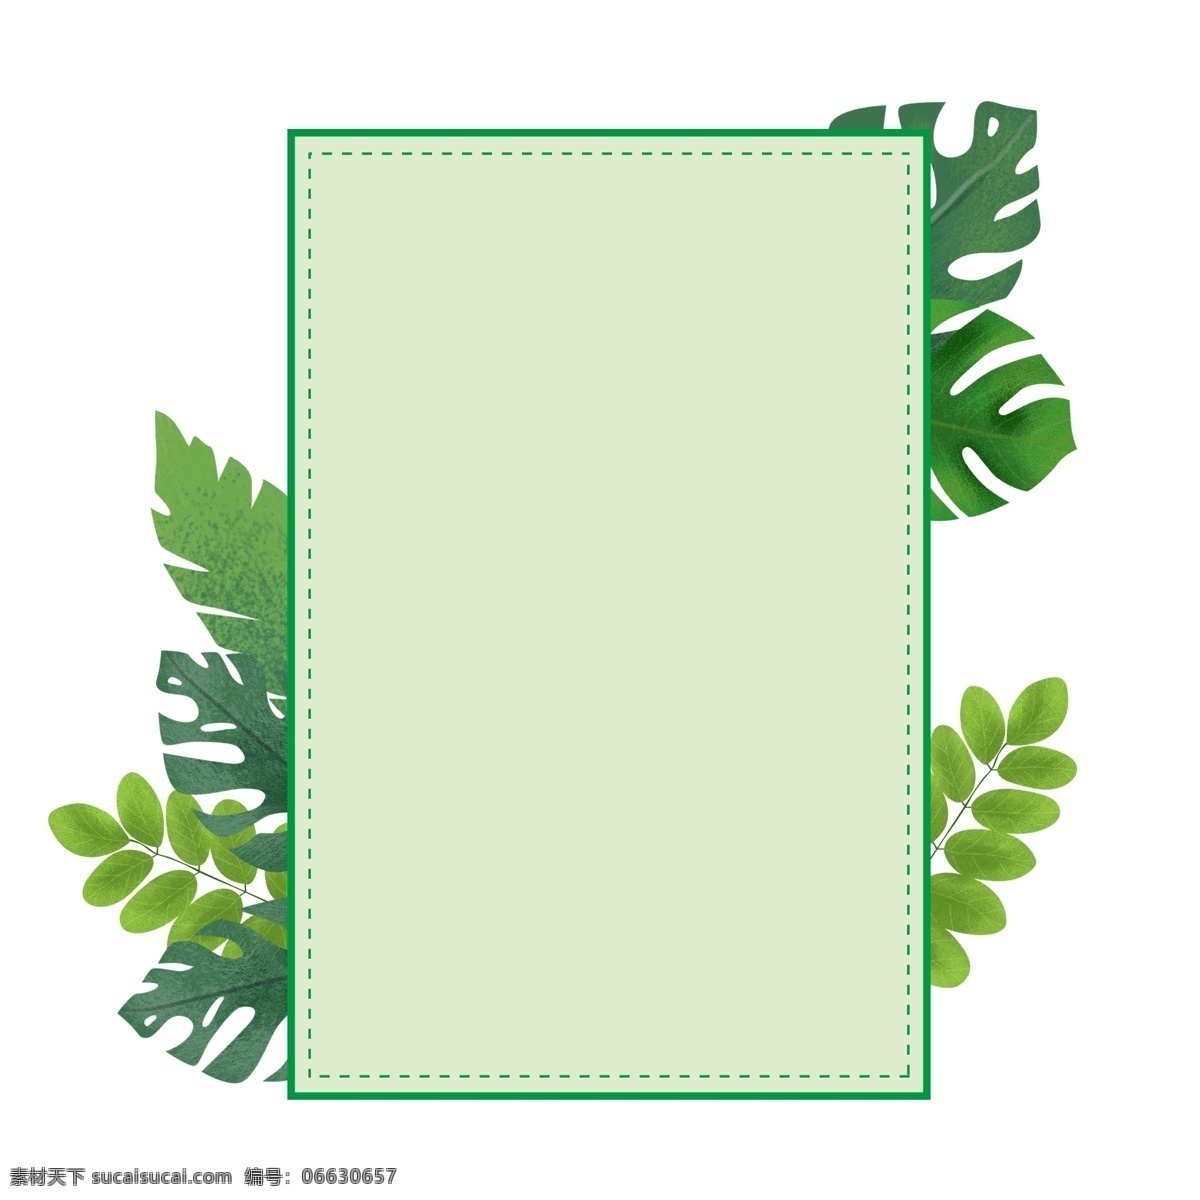 矩形 植物 海报 边框 绿色边框 叶子 长方形 几何图形 海报边框 手绘 绿植 春天 绿叶